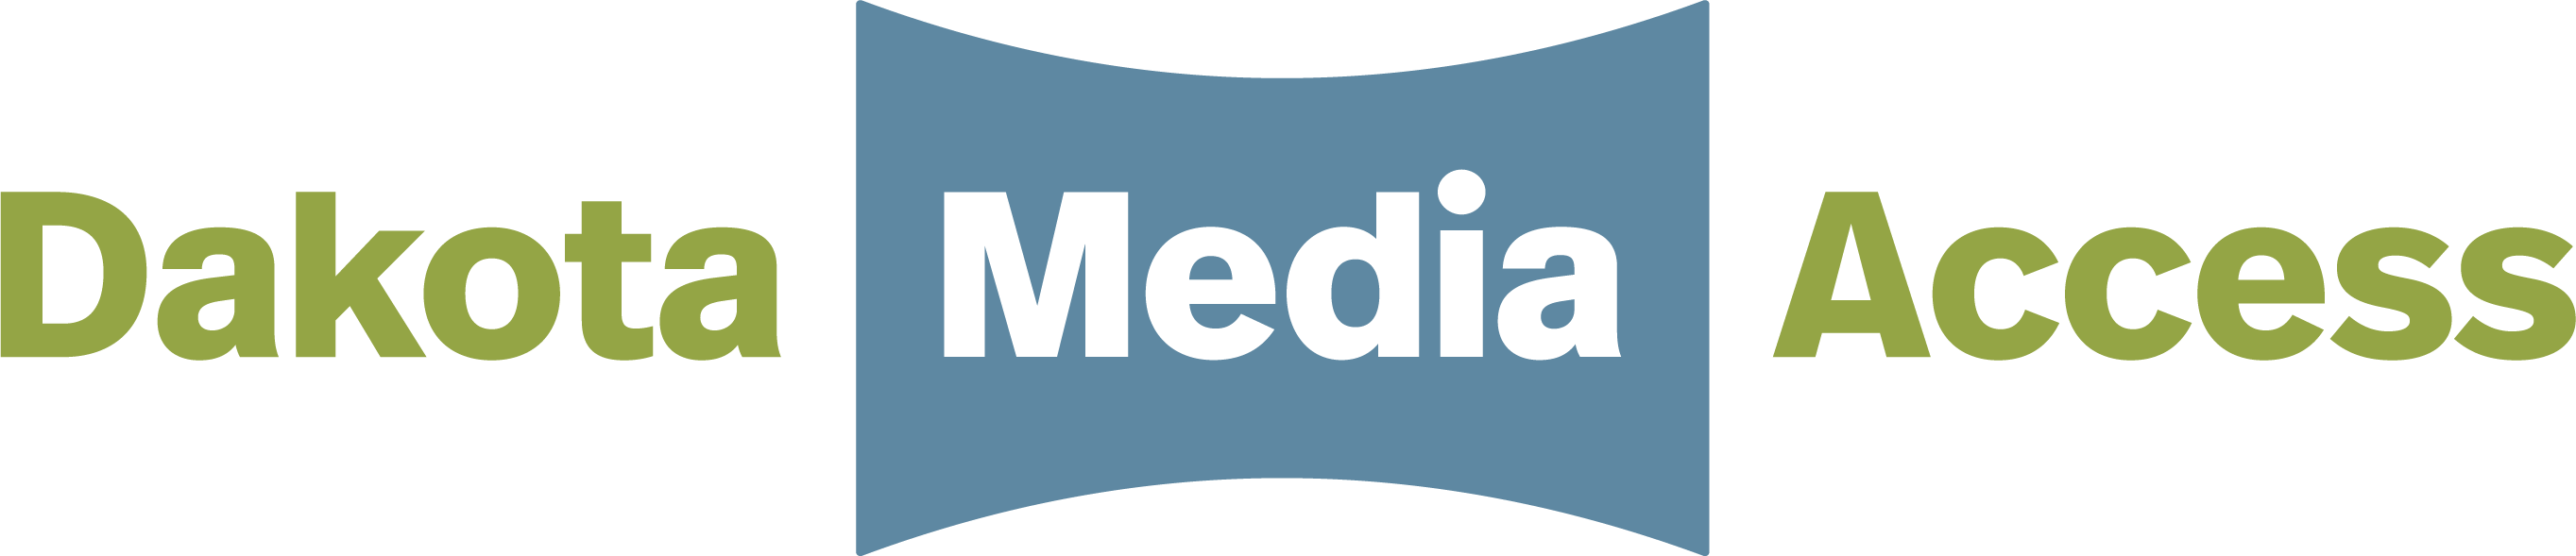 Dakota Media Access Logo